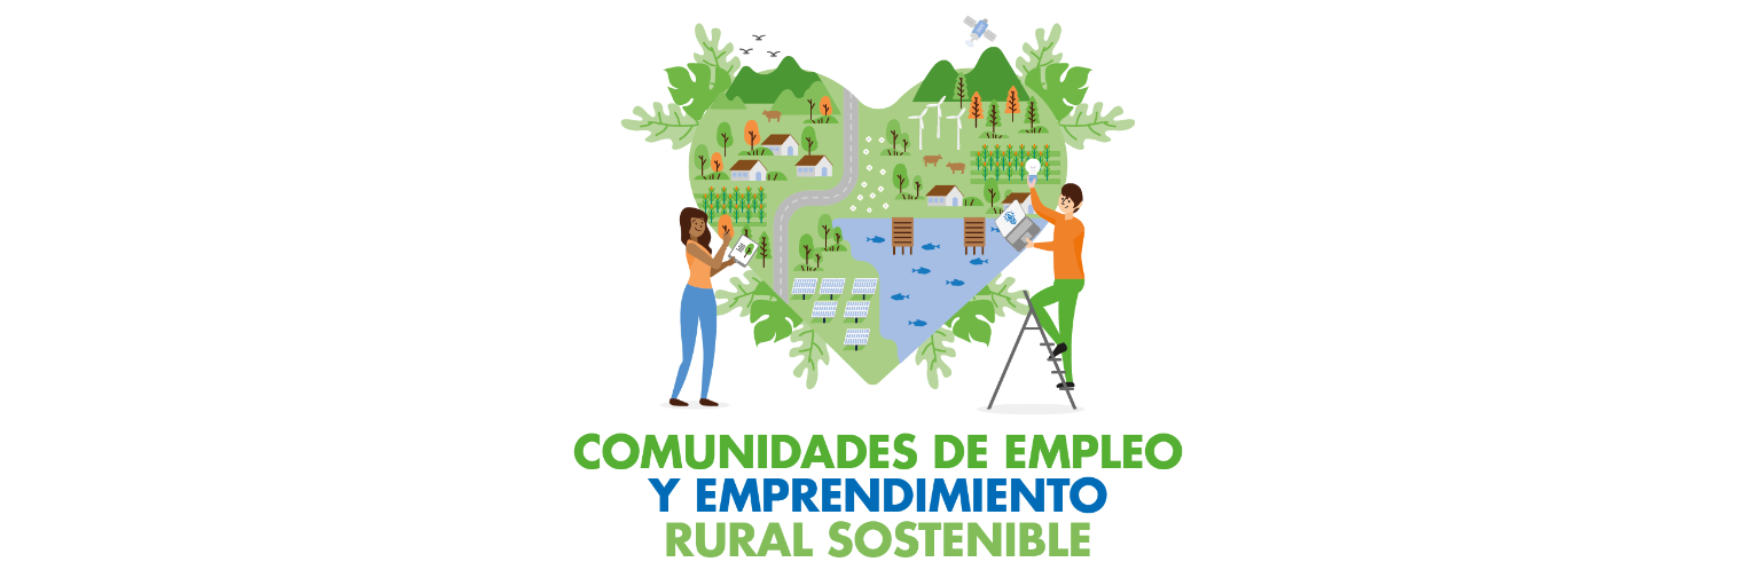 Comunidades de Empleo y Emprendimiento Rural Sostenible